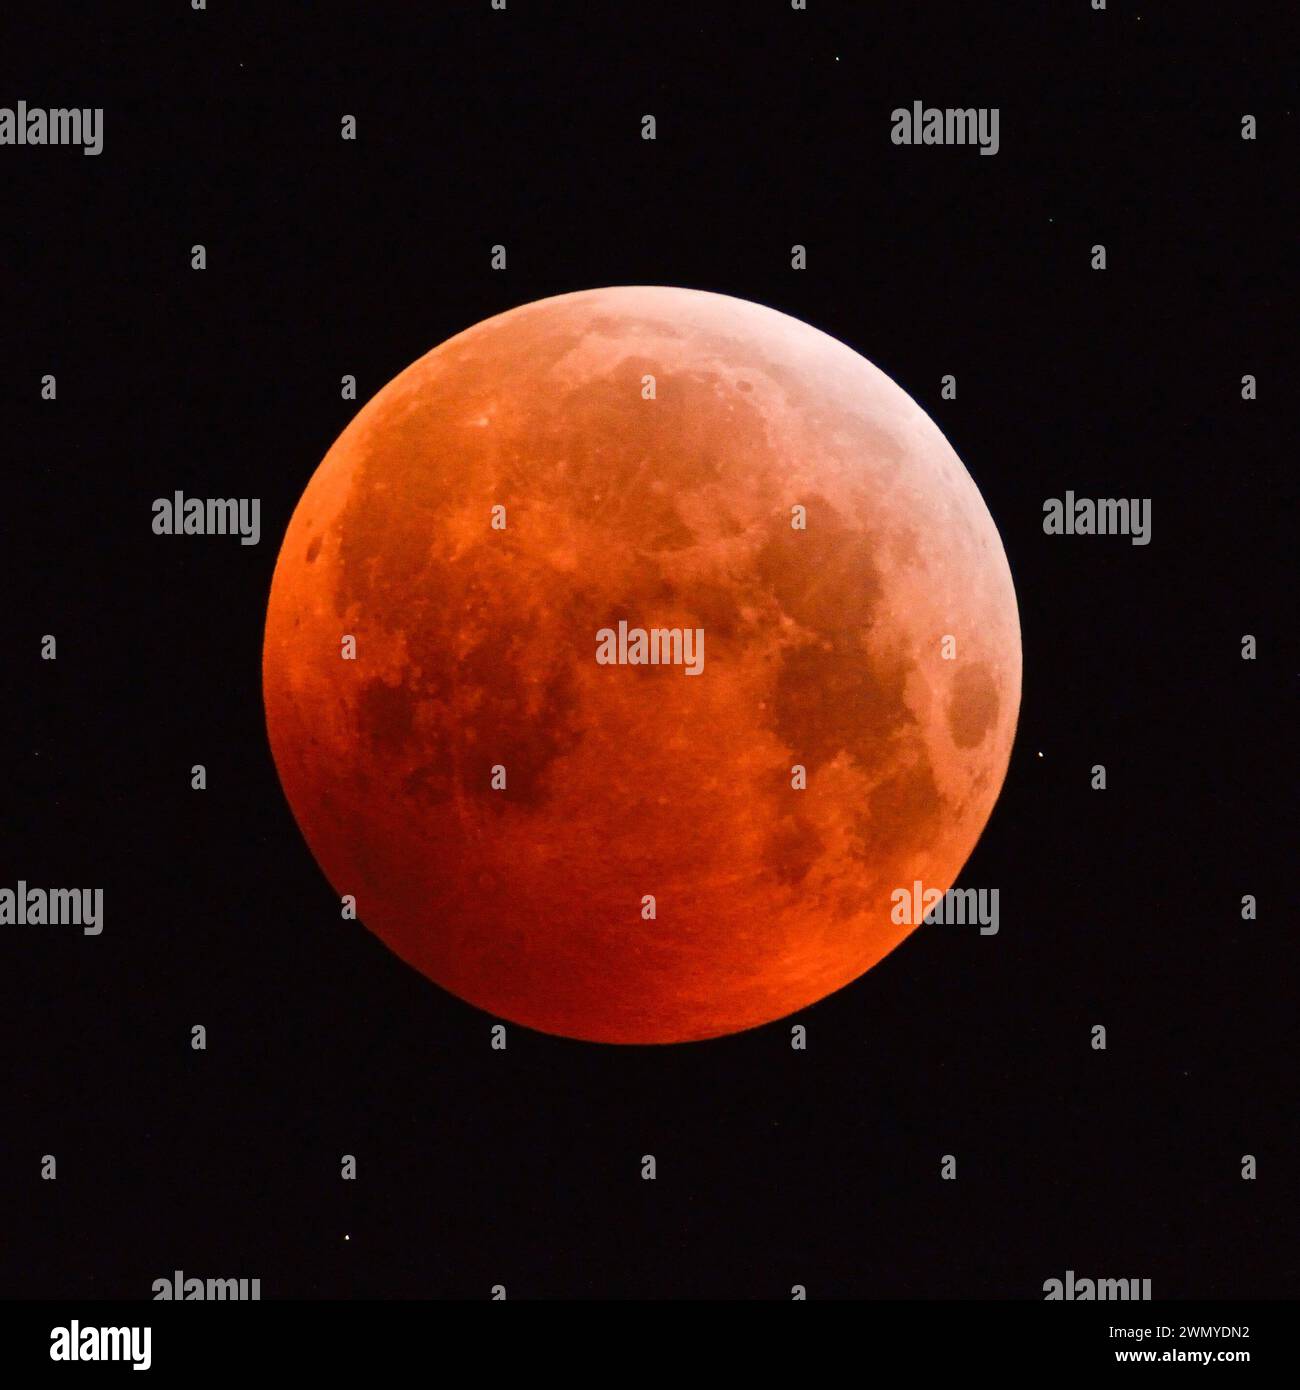 Eclipse de la super lune, éclipse lunaire, super lune rouge, lune de sang / Blutmond, pleine lune orange rouge avec des étoiles scintillantes, 21 janvier 2019, Allemagne. Banque D'Images